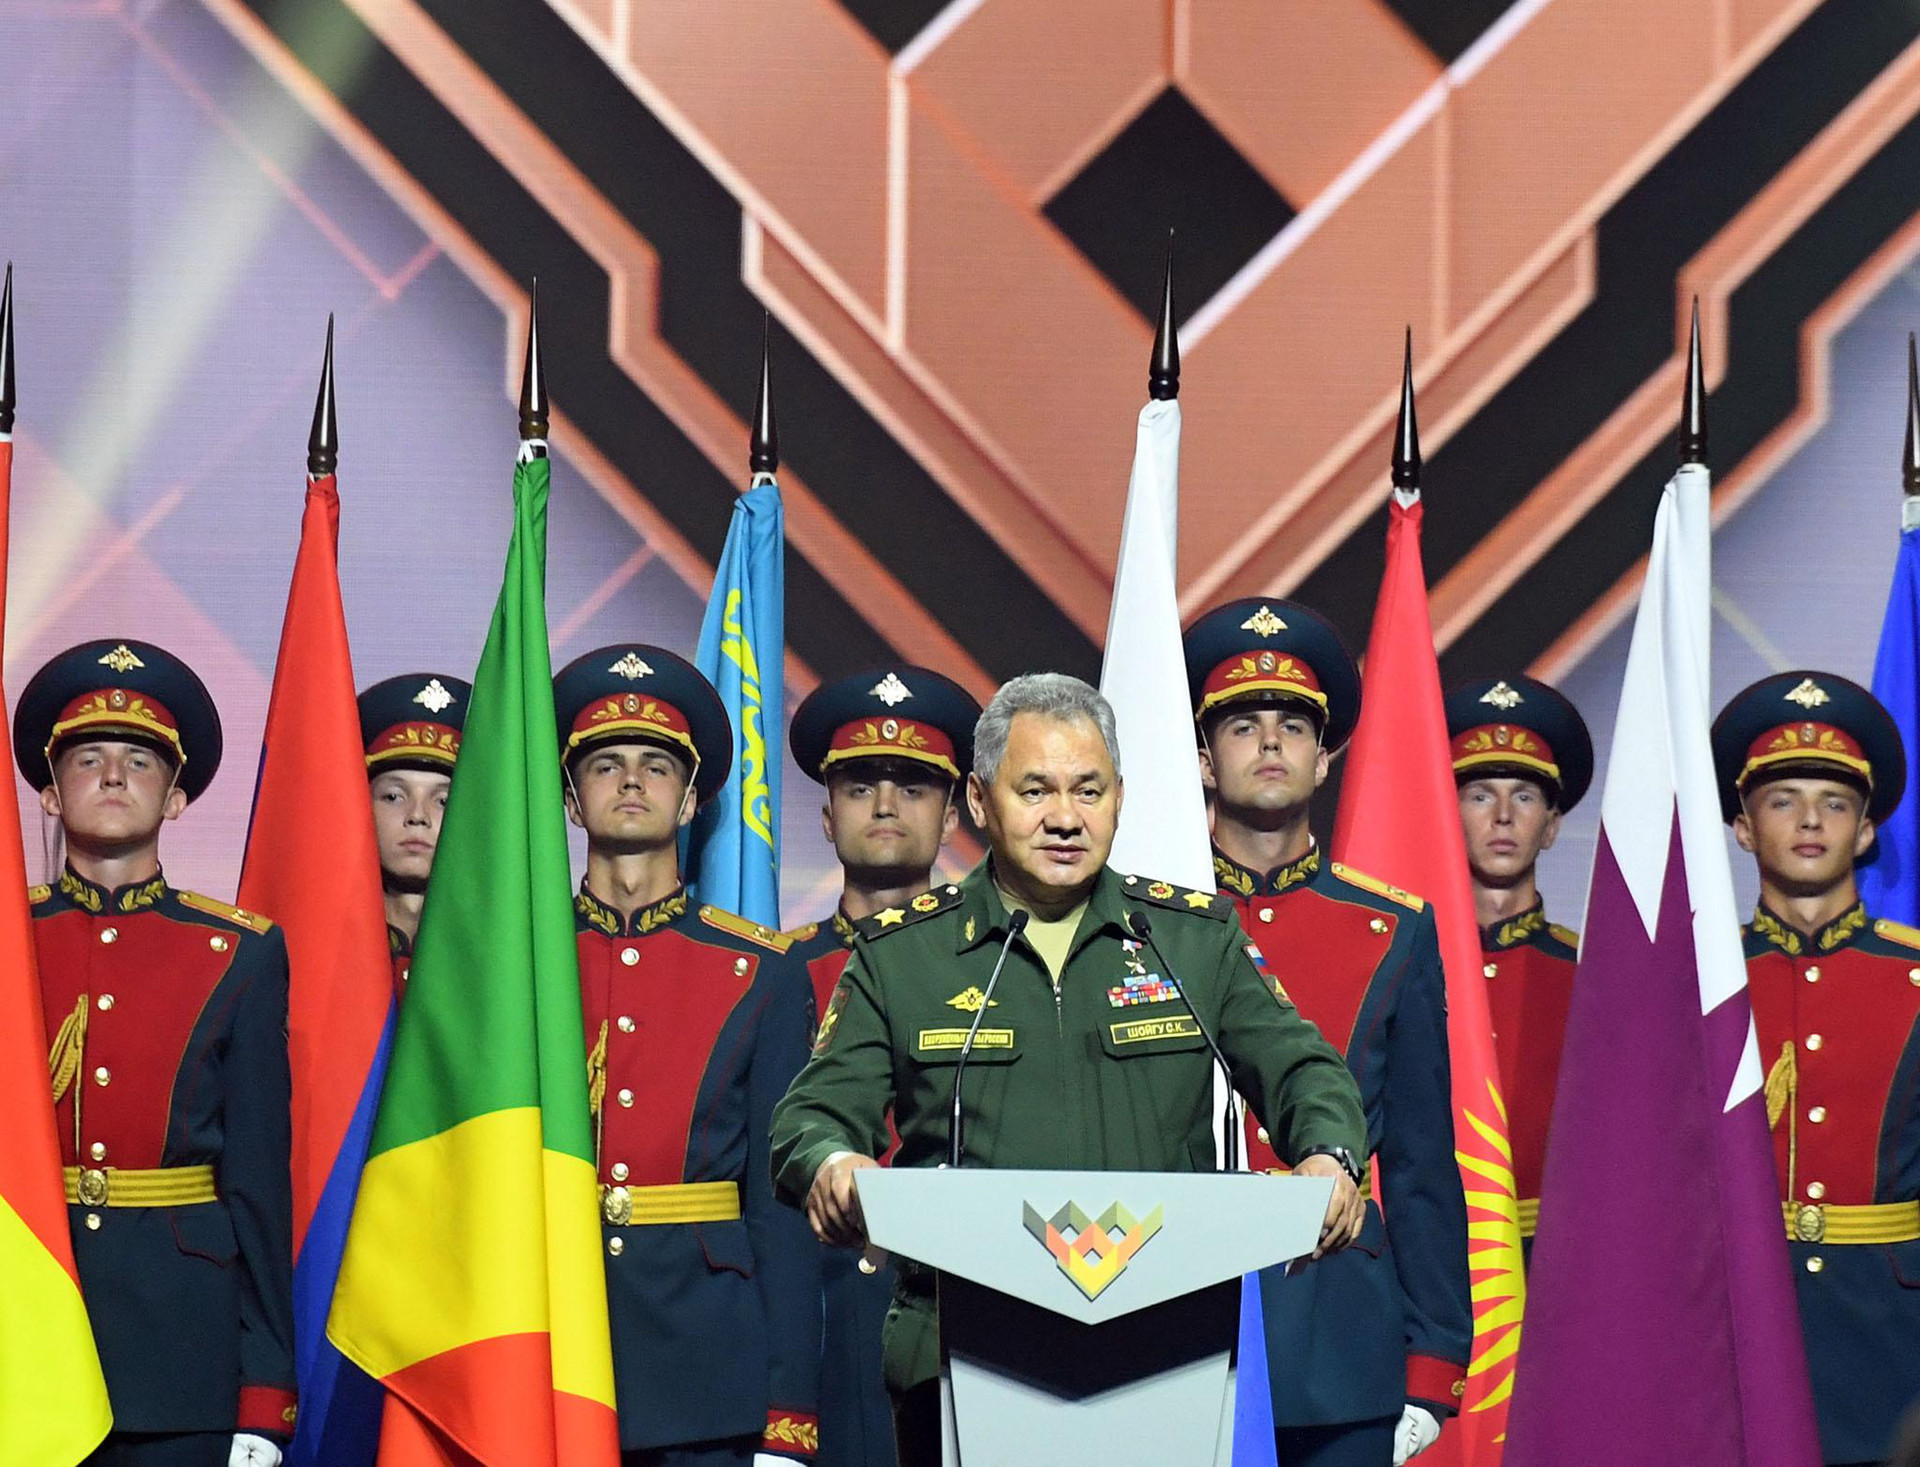 Army 2020 Army &Games 2020: Sức mạnh QĐND Việt Nam được khẳng định trong nền quốc phòng hiện đại thời kỳ hội nhập - Ảnh 2.